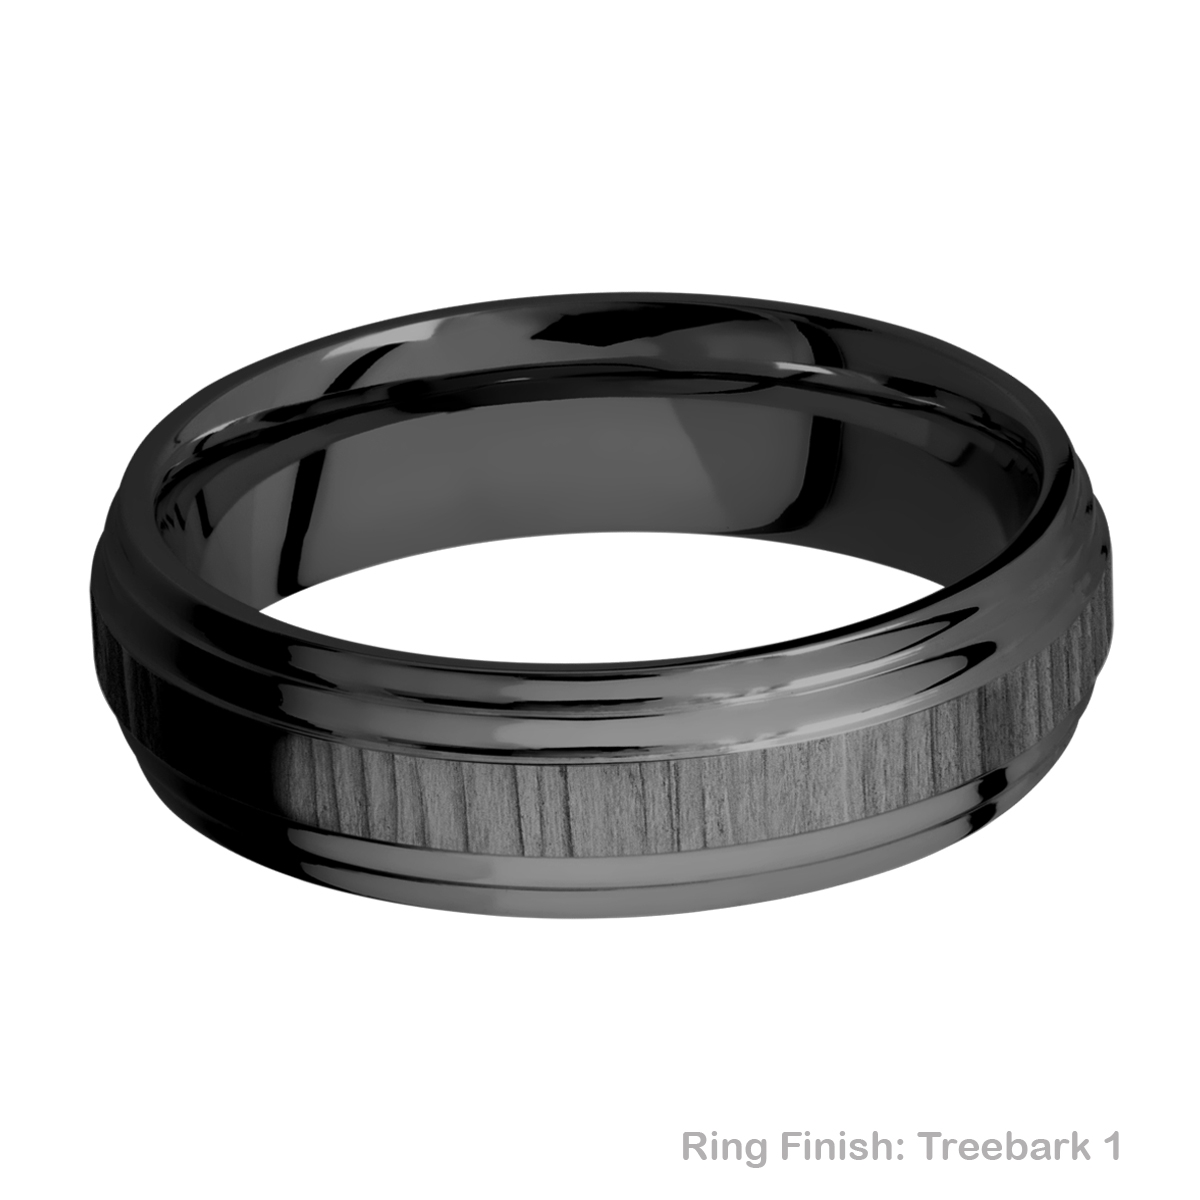 Lashbrook Z6F2S Zirconium Wedding Ring or Band